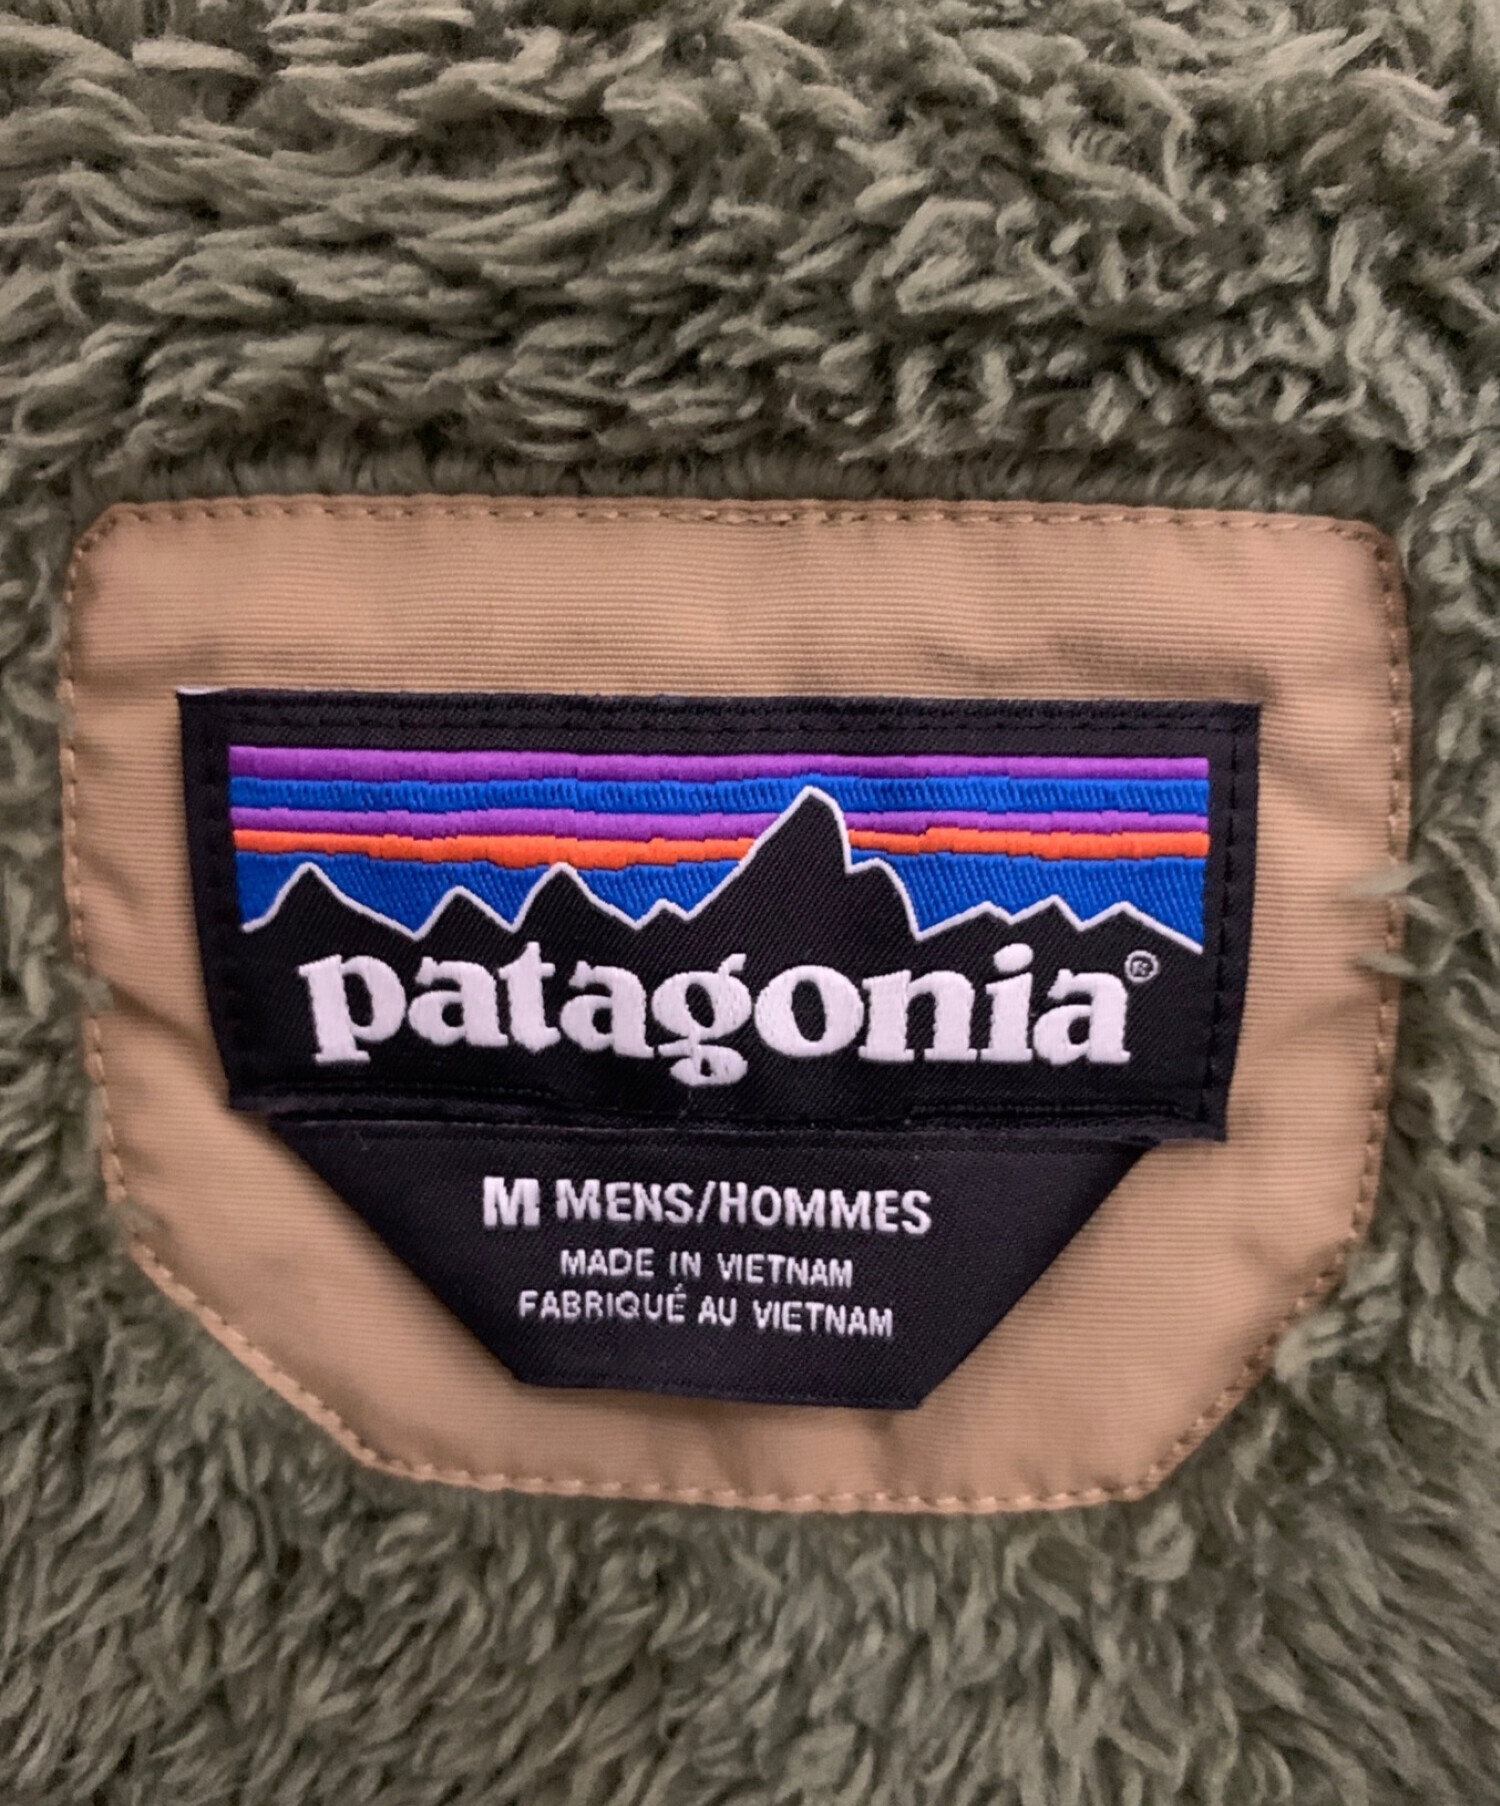 Patagonia (パタゴニア) イスマスパーカー ブラウン サイズ:M